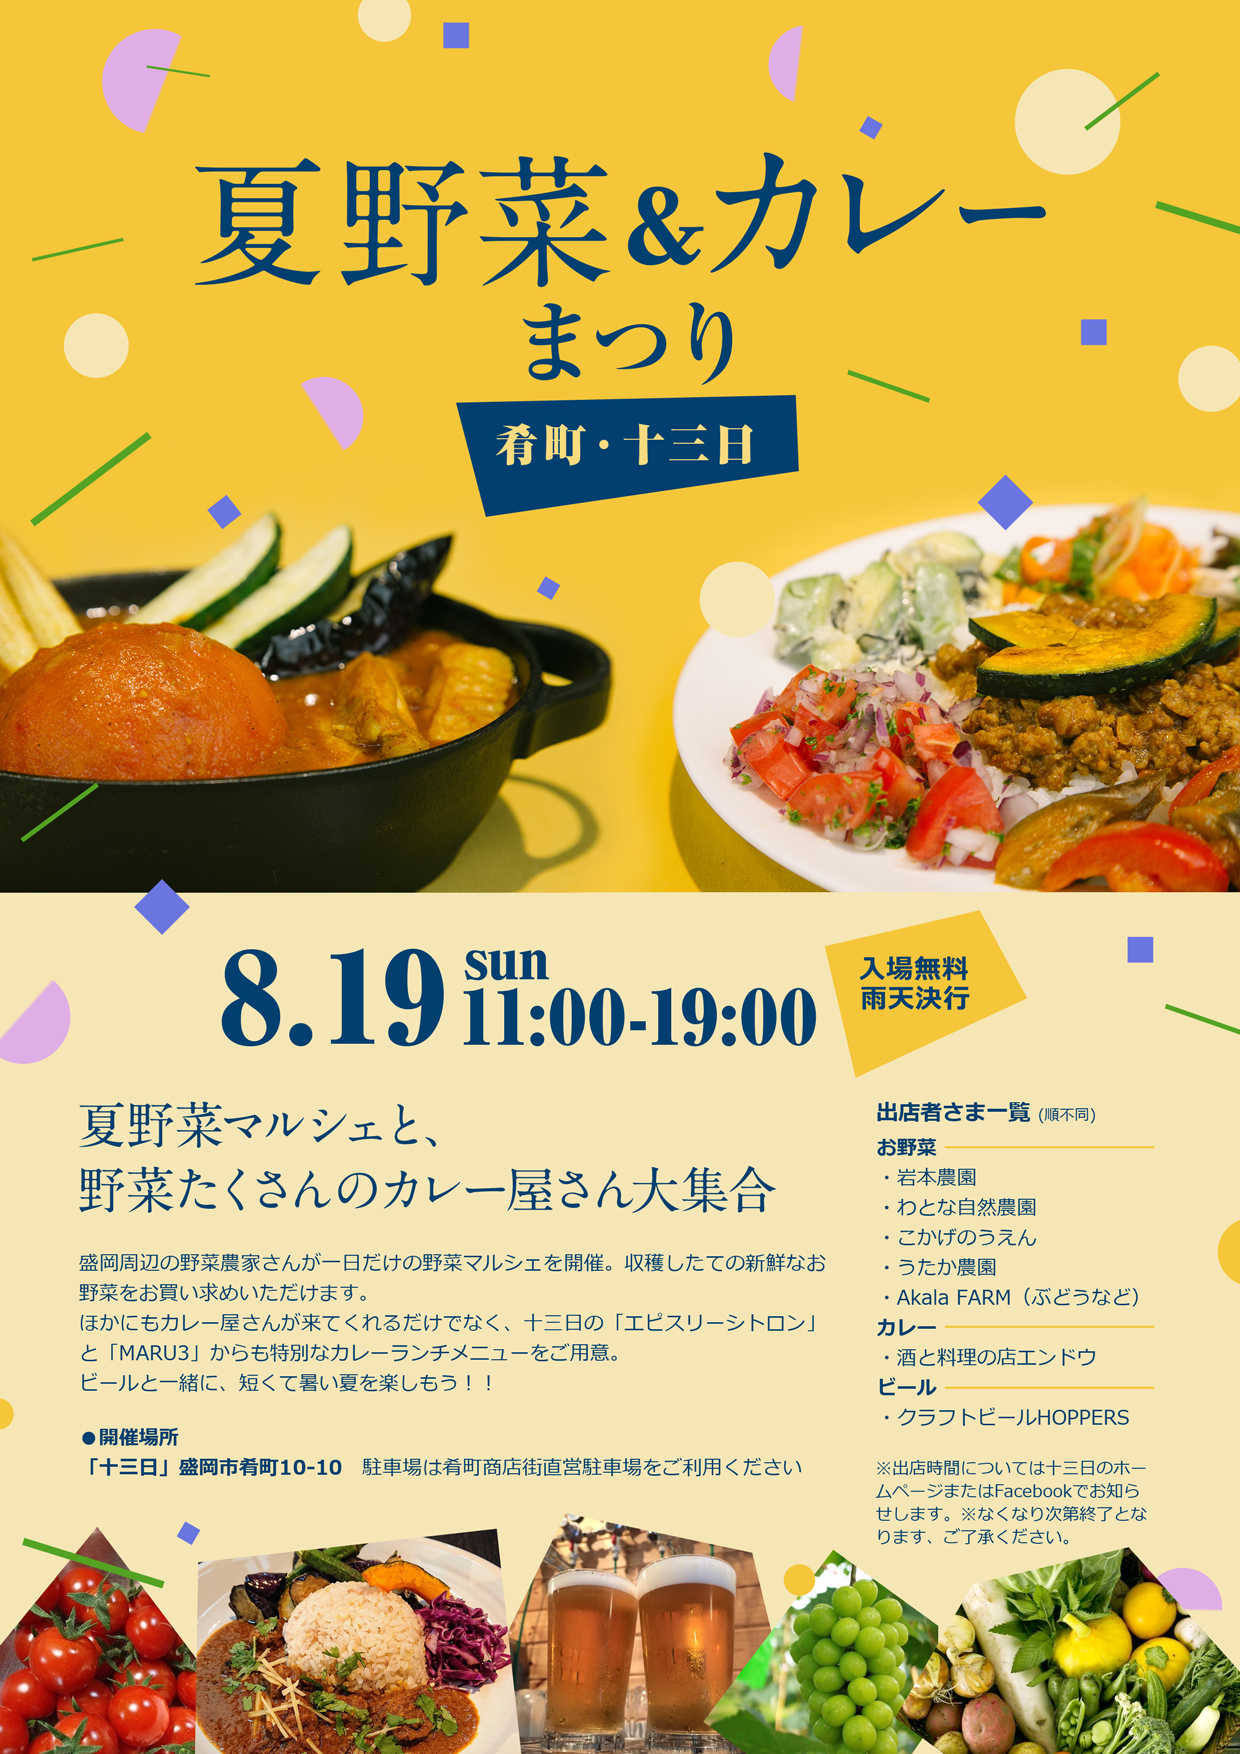 【8月29日開催】夏野菜とカレー祭り